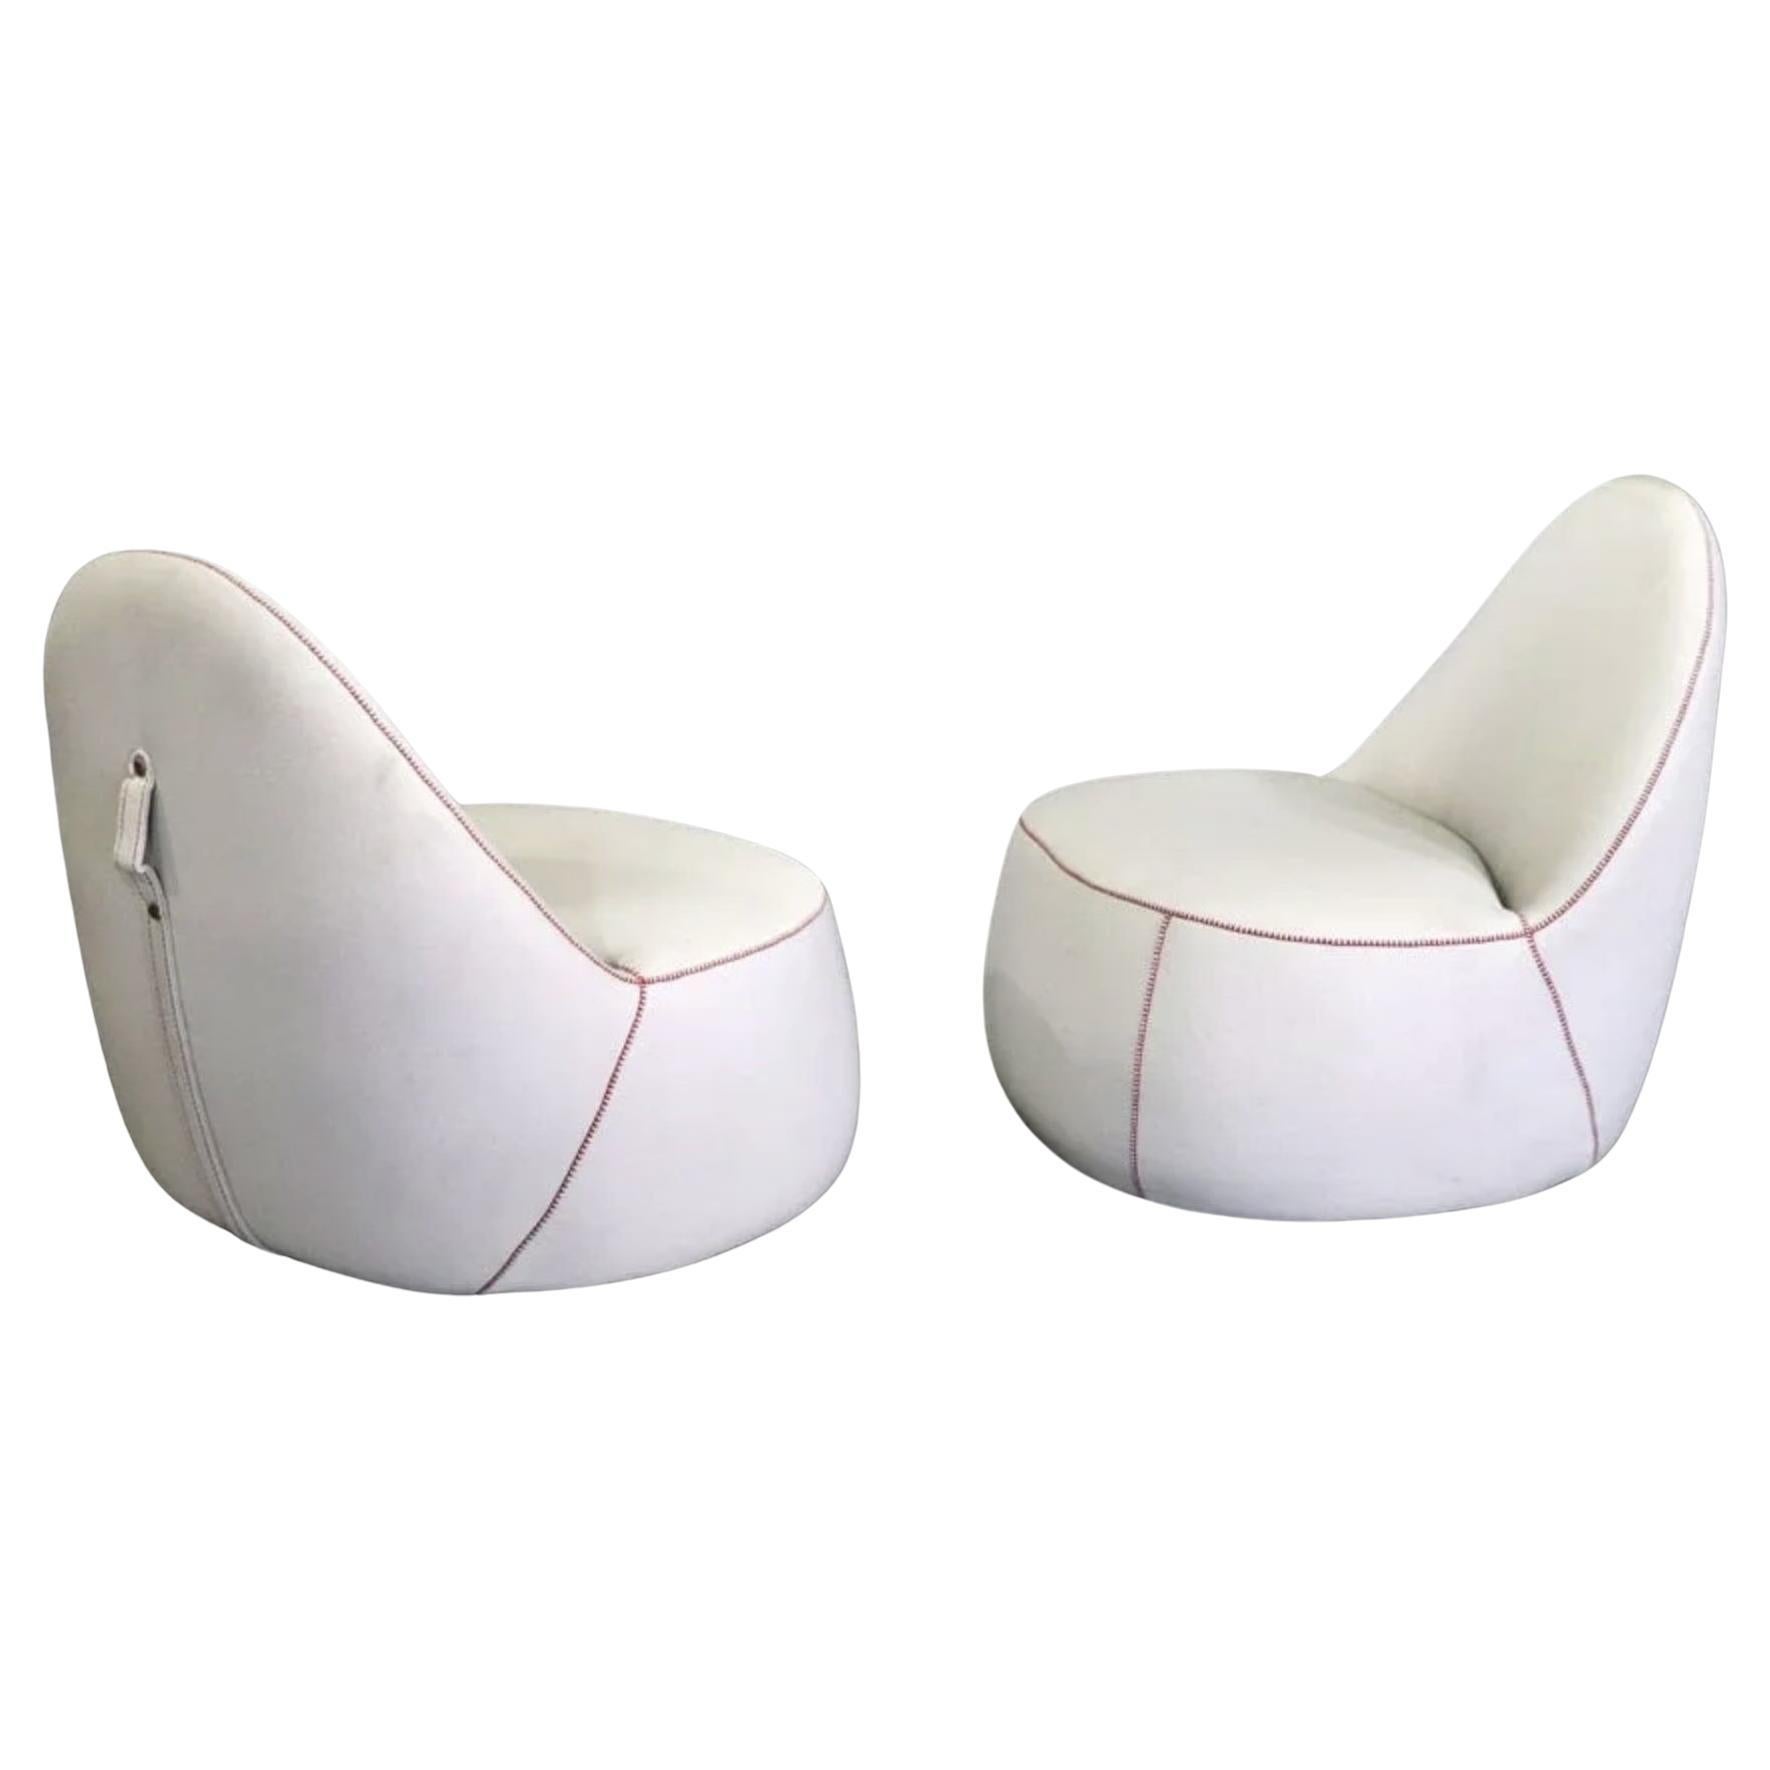 Bernhardt Design "Mitt Chairs"